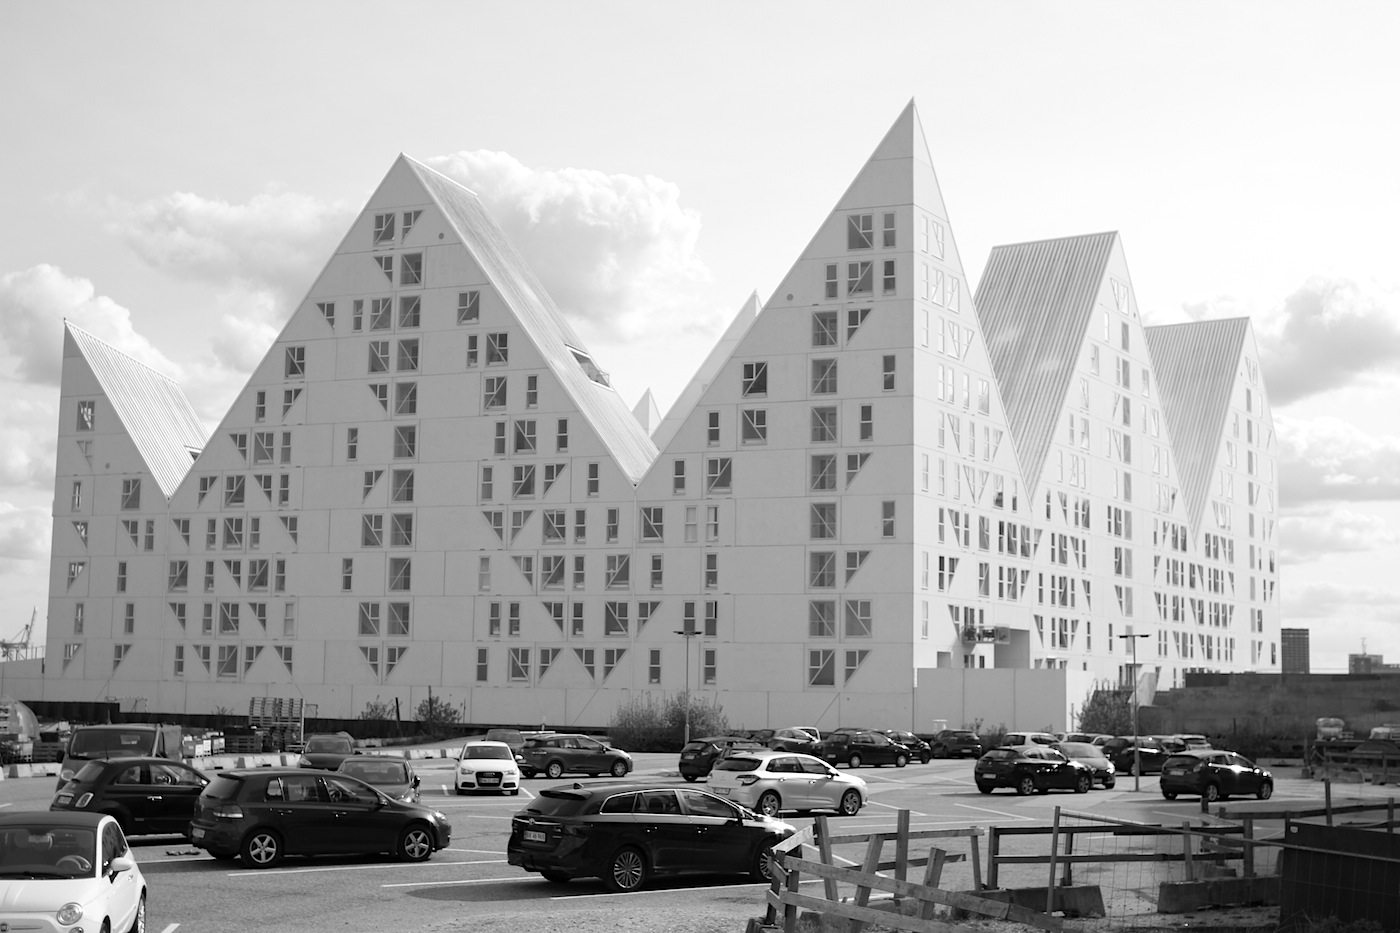 Der Eisberg. wurde von den vier Architekturbüros Julien de Smedt JDS (Kopenhagen), Louis Paillard (Paris), SeArch (Amsterdam) und CEBRA (Aarhus) entworfen.